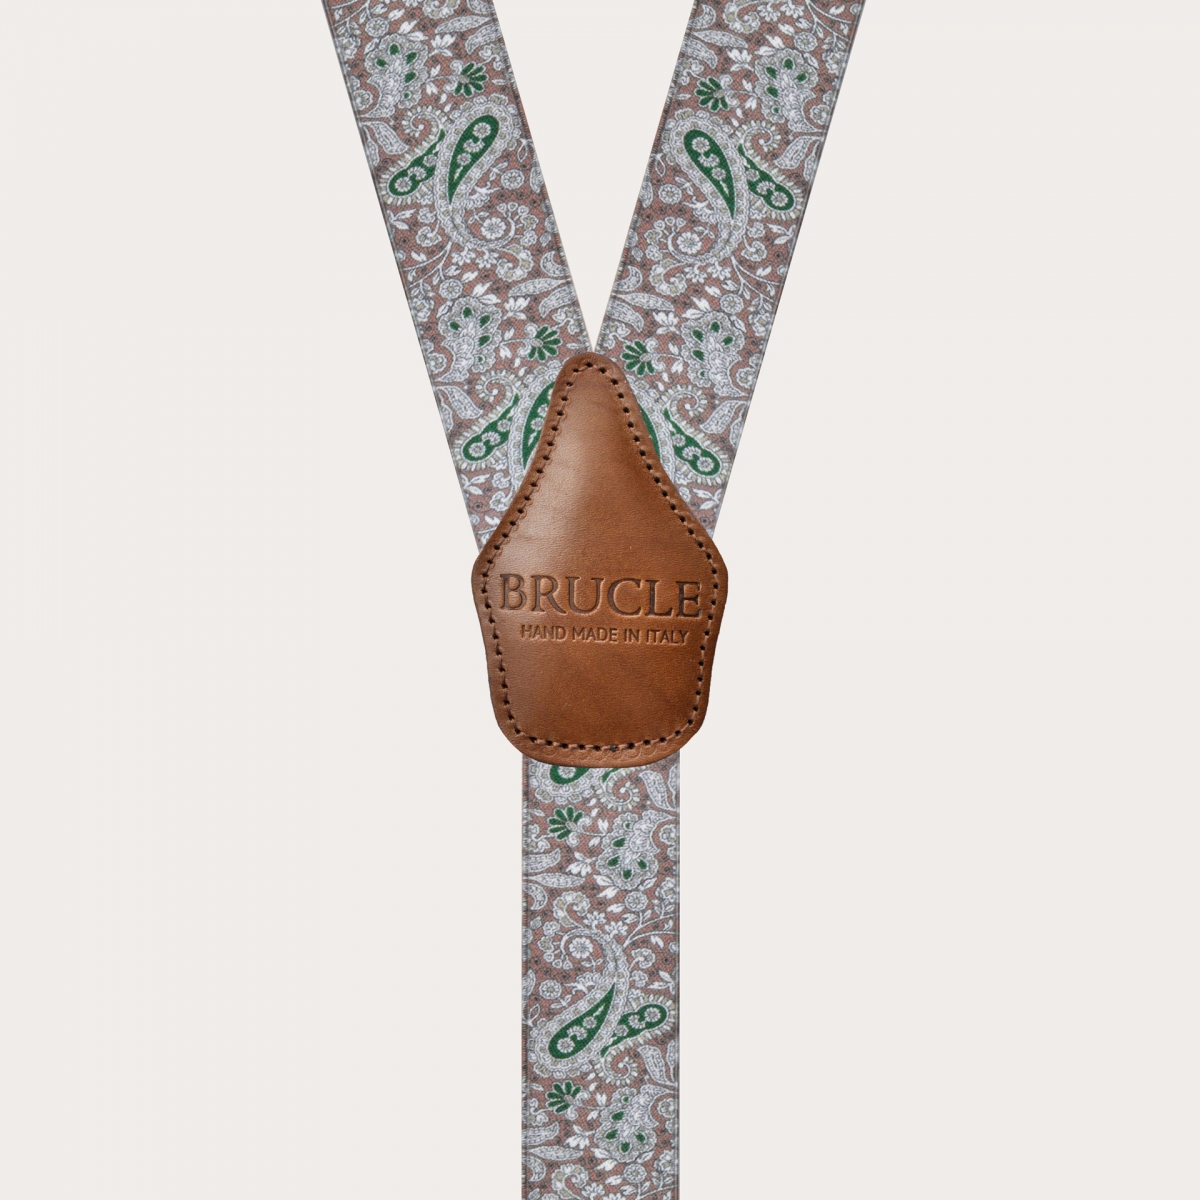 BRUCLE Bretelle elastiche doppio uso, fantasia cachemire marrone e verde